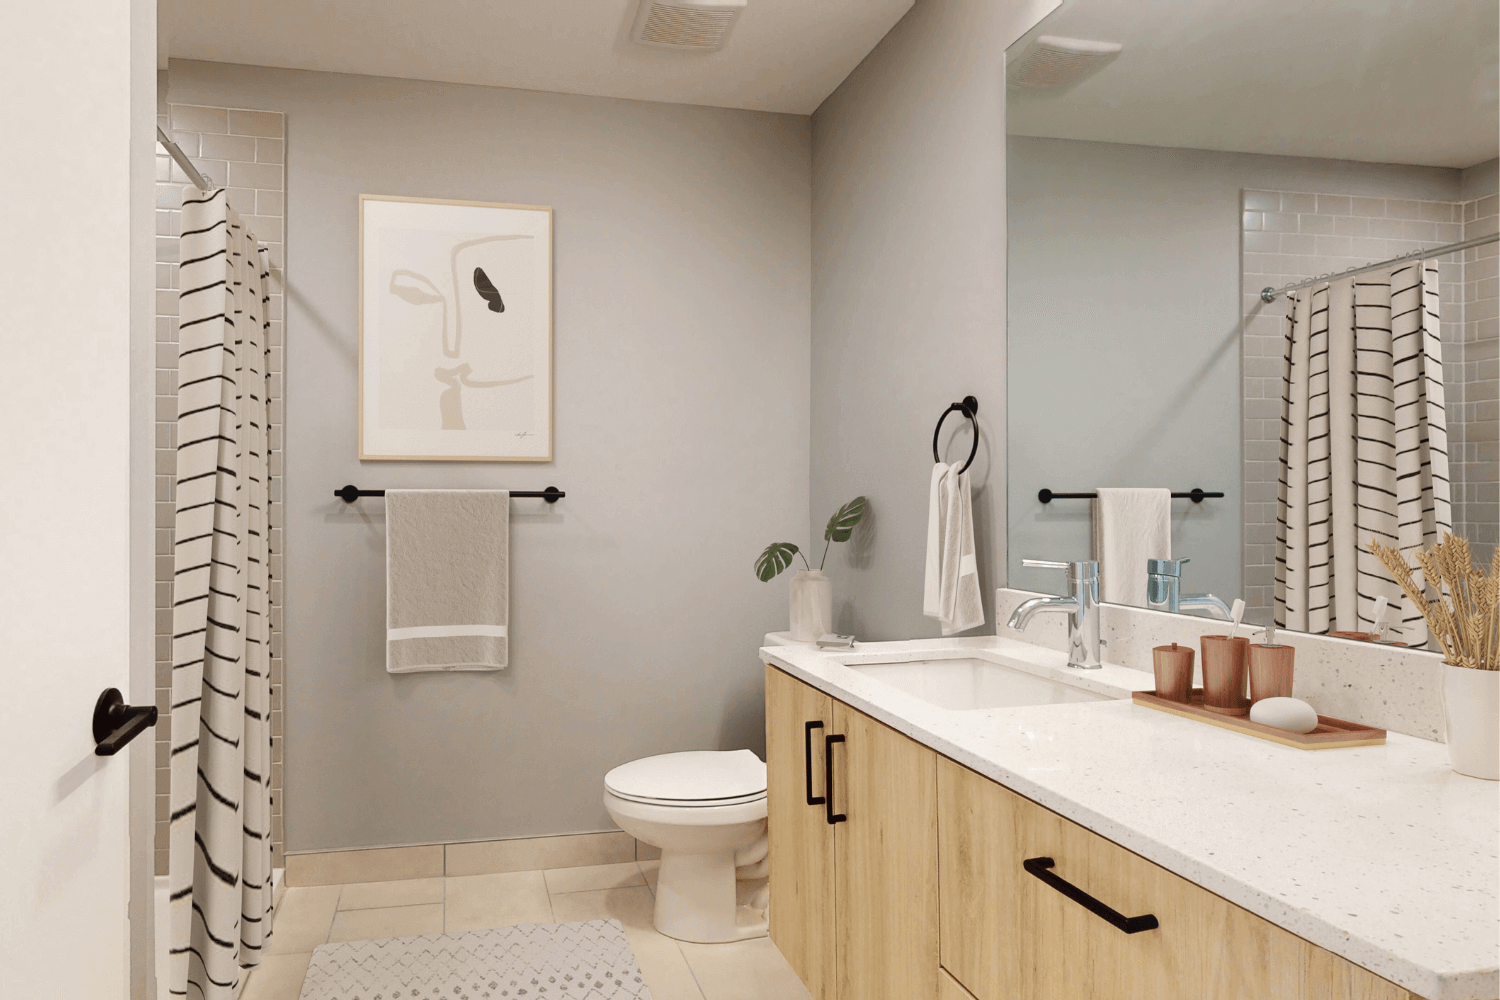 Cavalier 1 bathroom for rent in KC